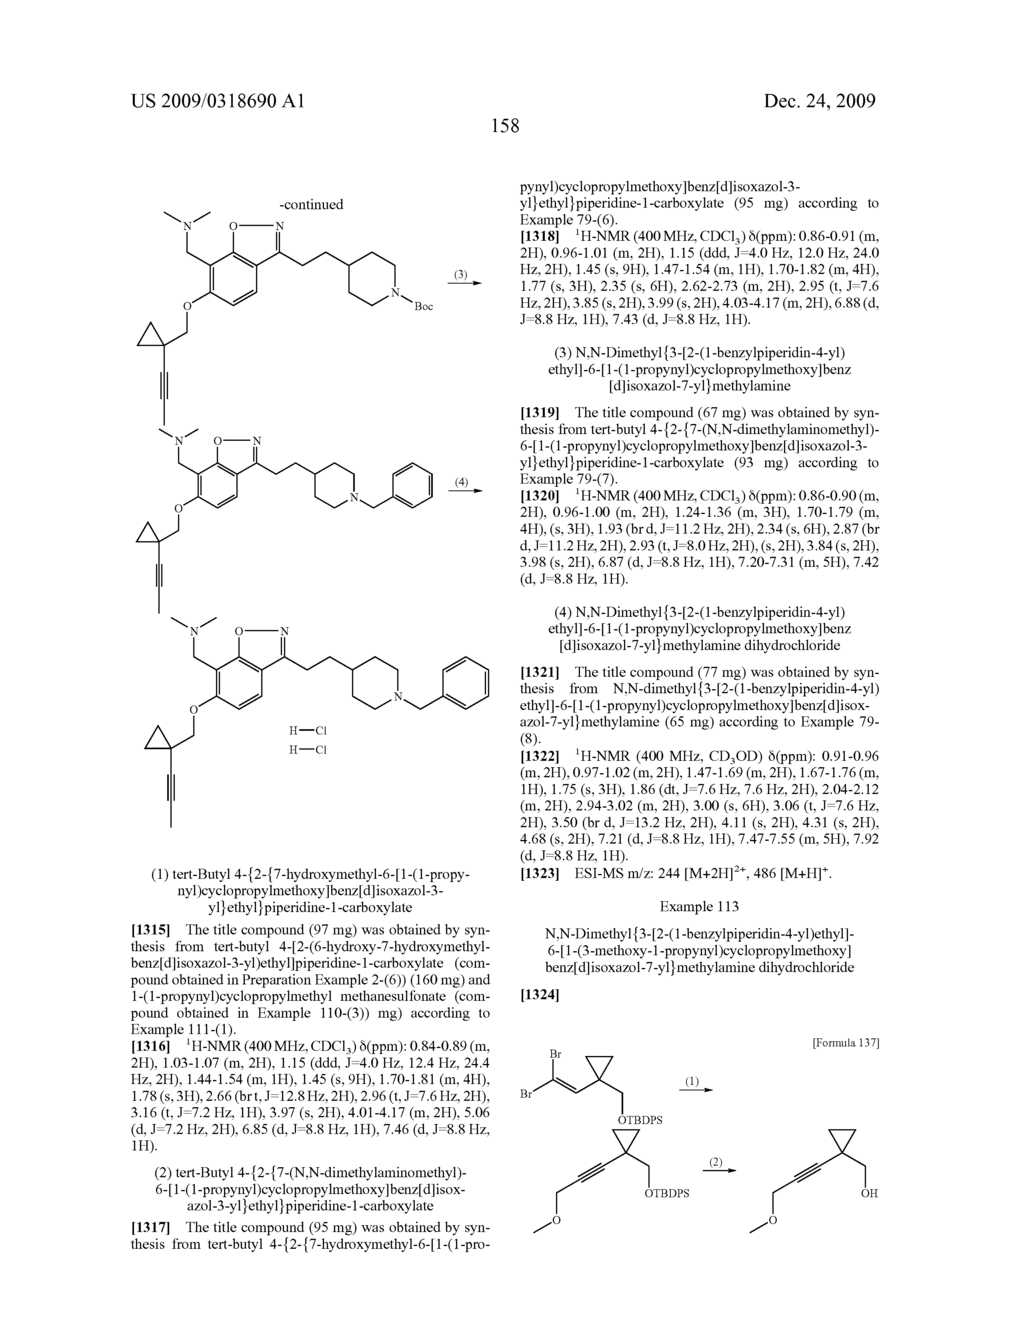 Benzisoxazole Compound - diagram, schematic, and image 159